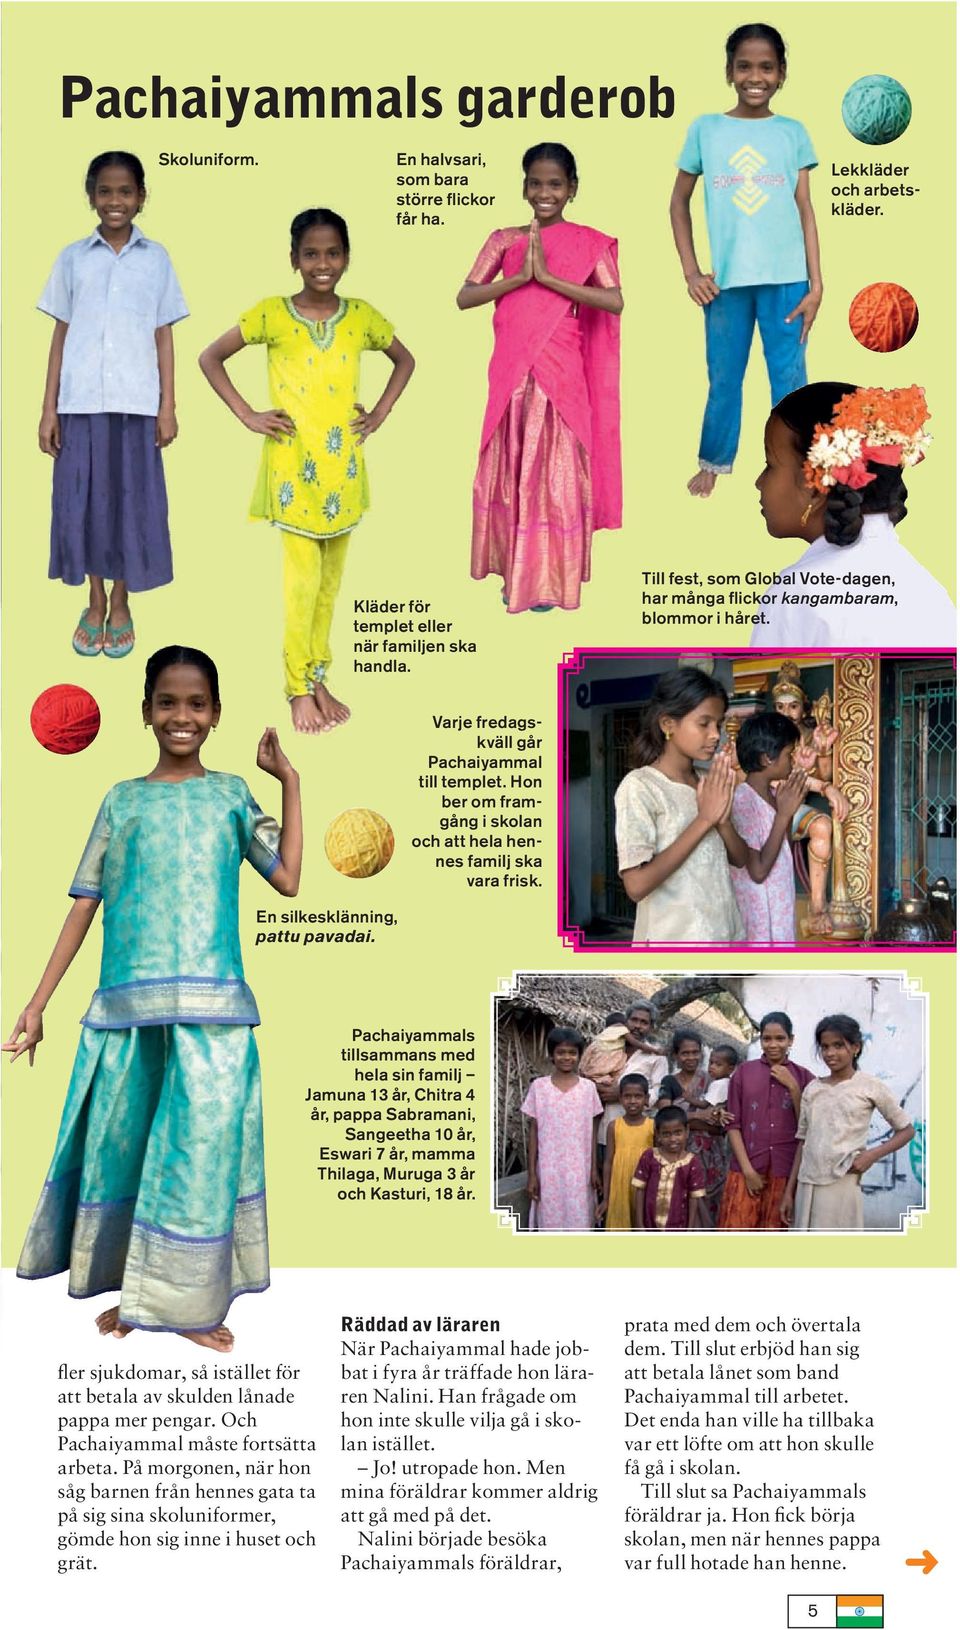 En silkesklänning, pattu pavadai. Pachaiyammals tillsammans med hela sin familj Jamuna 13 år, Chitra 4 år, pappa Sabramani, Sangeetha 10 år, Eswari 7 år, mamma Thilaga, Muruga 3 år och Kasturi, 18 år.